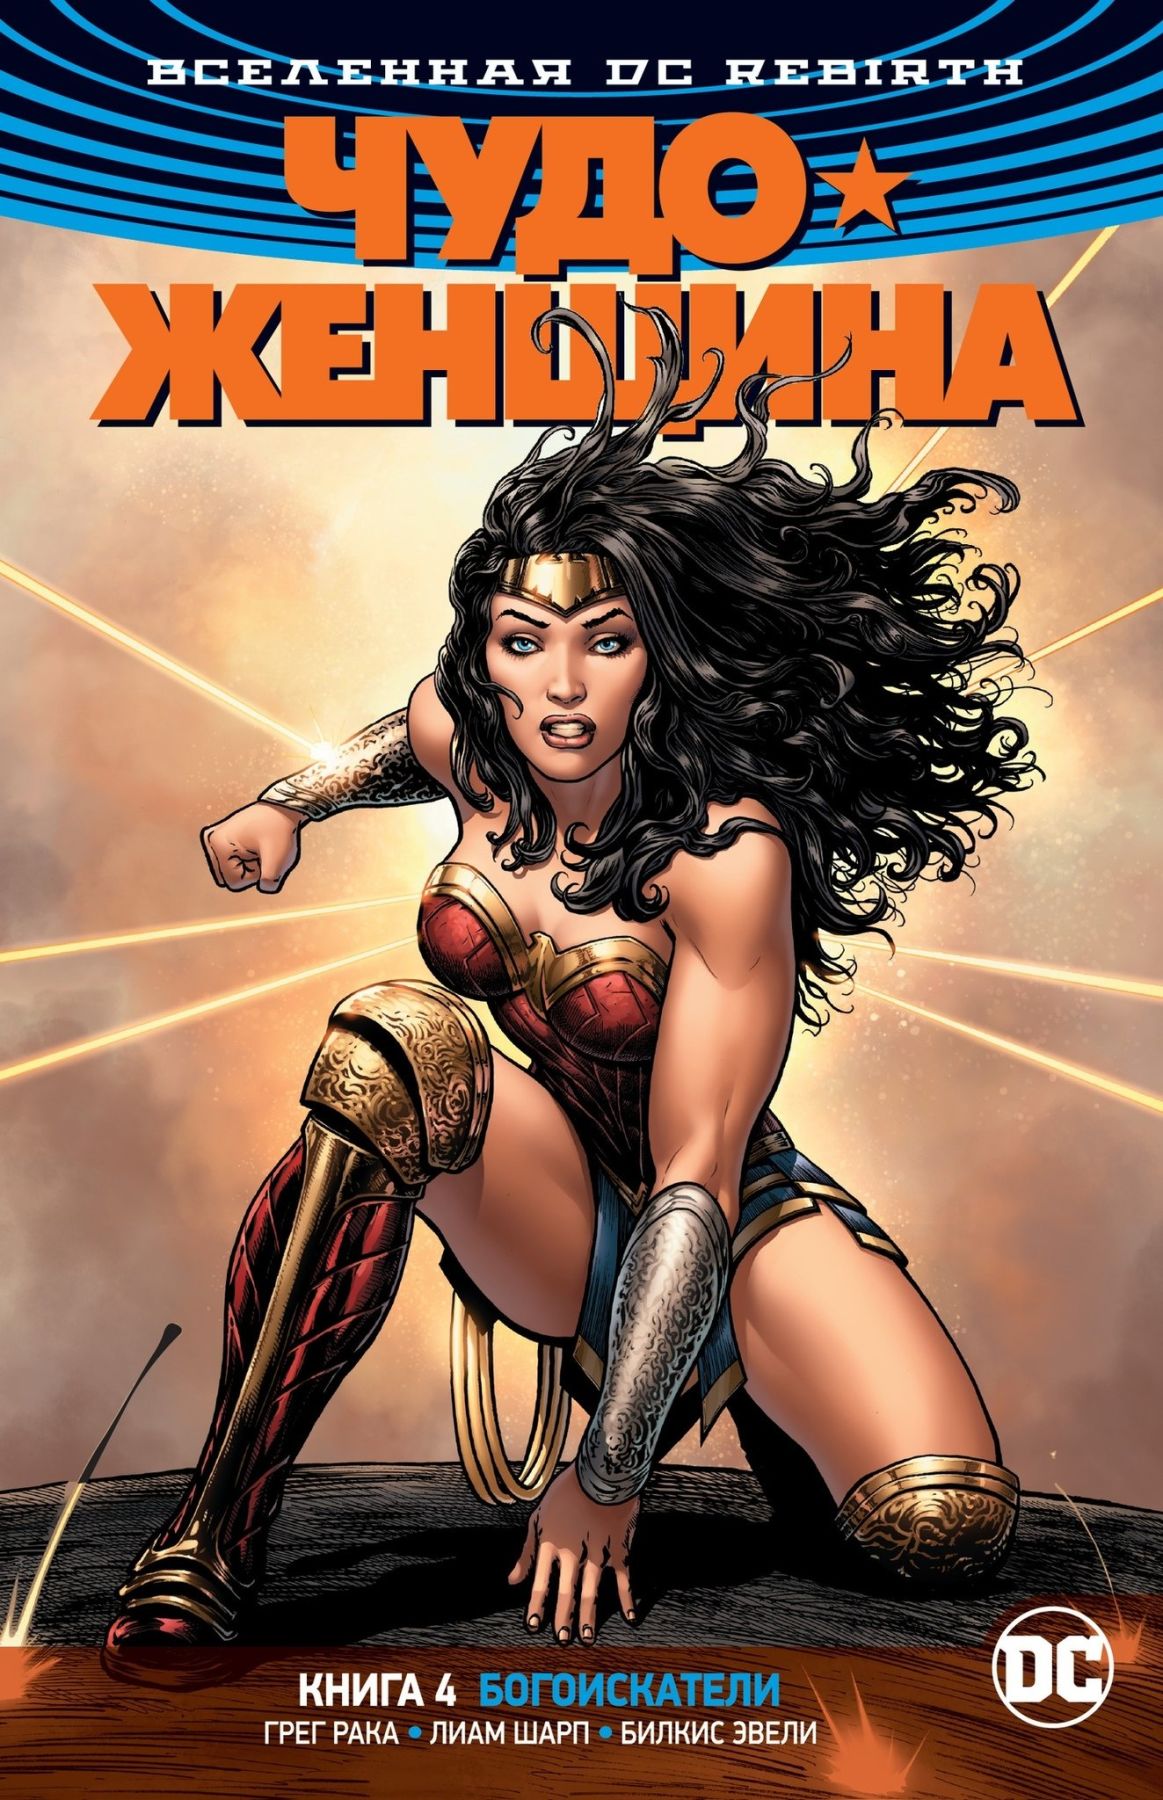 Комикс на русском языке «Вселенная DC. Rebirth. Чудо-Женщина. Книга 4. Богоискатели»